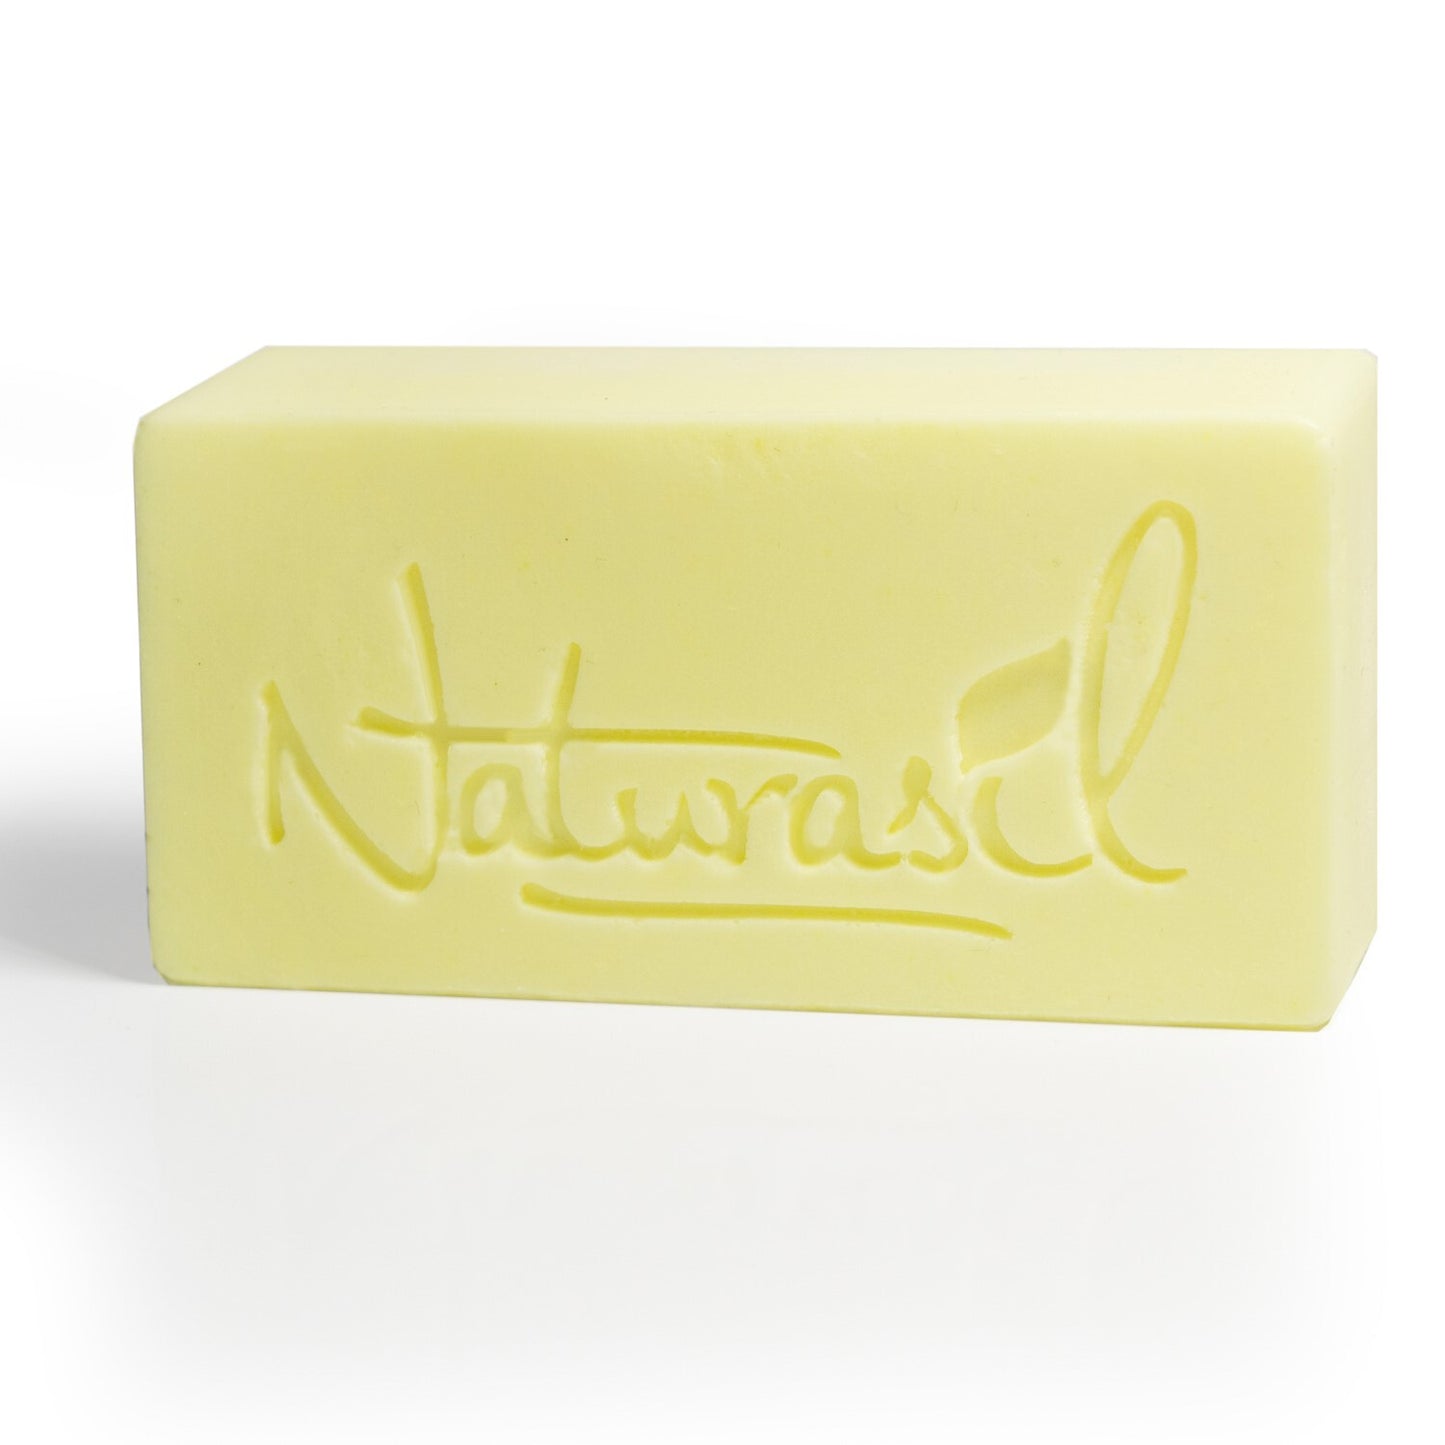 Nail Fungus Medicated 10% Sulfur Soap | 4 oz Bar